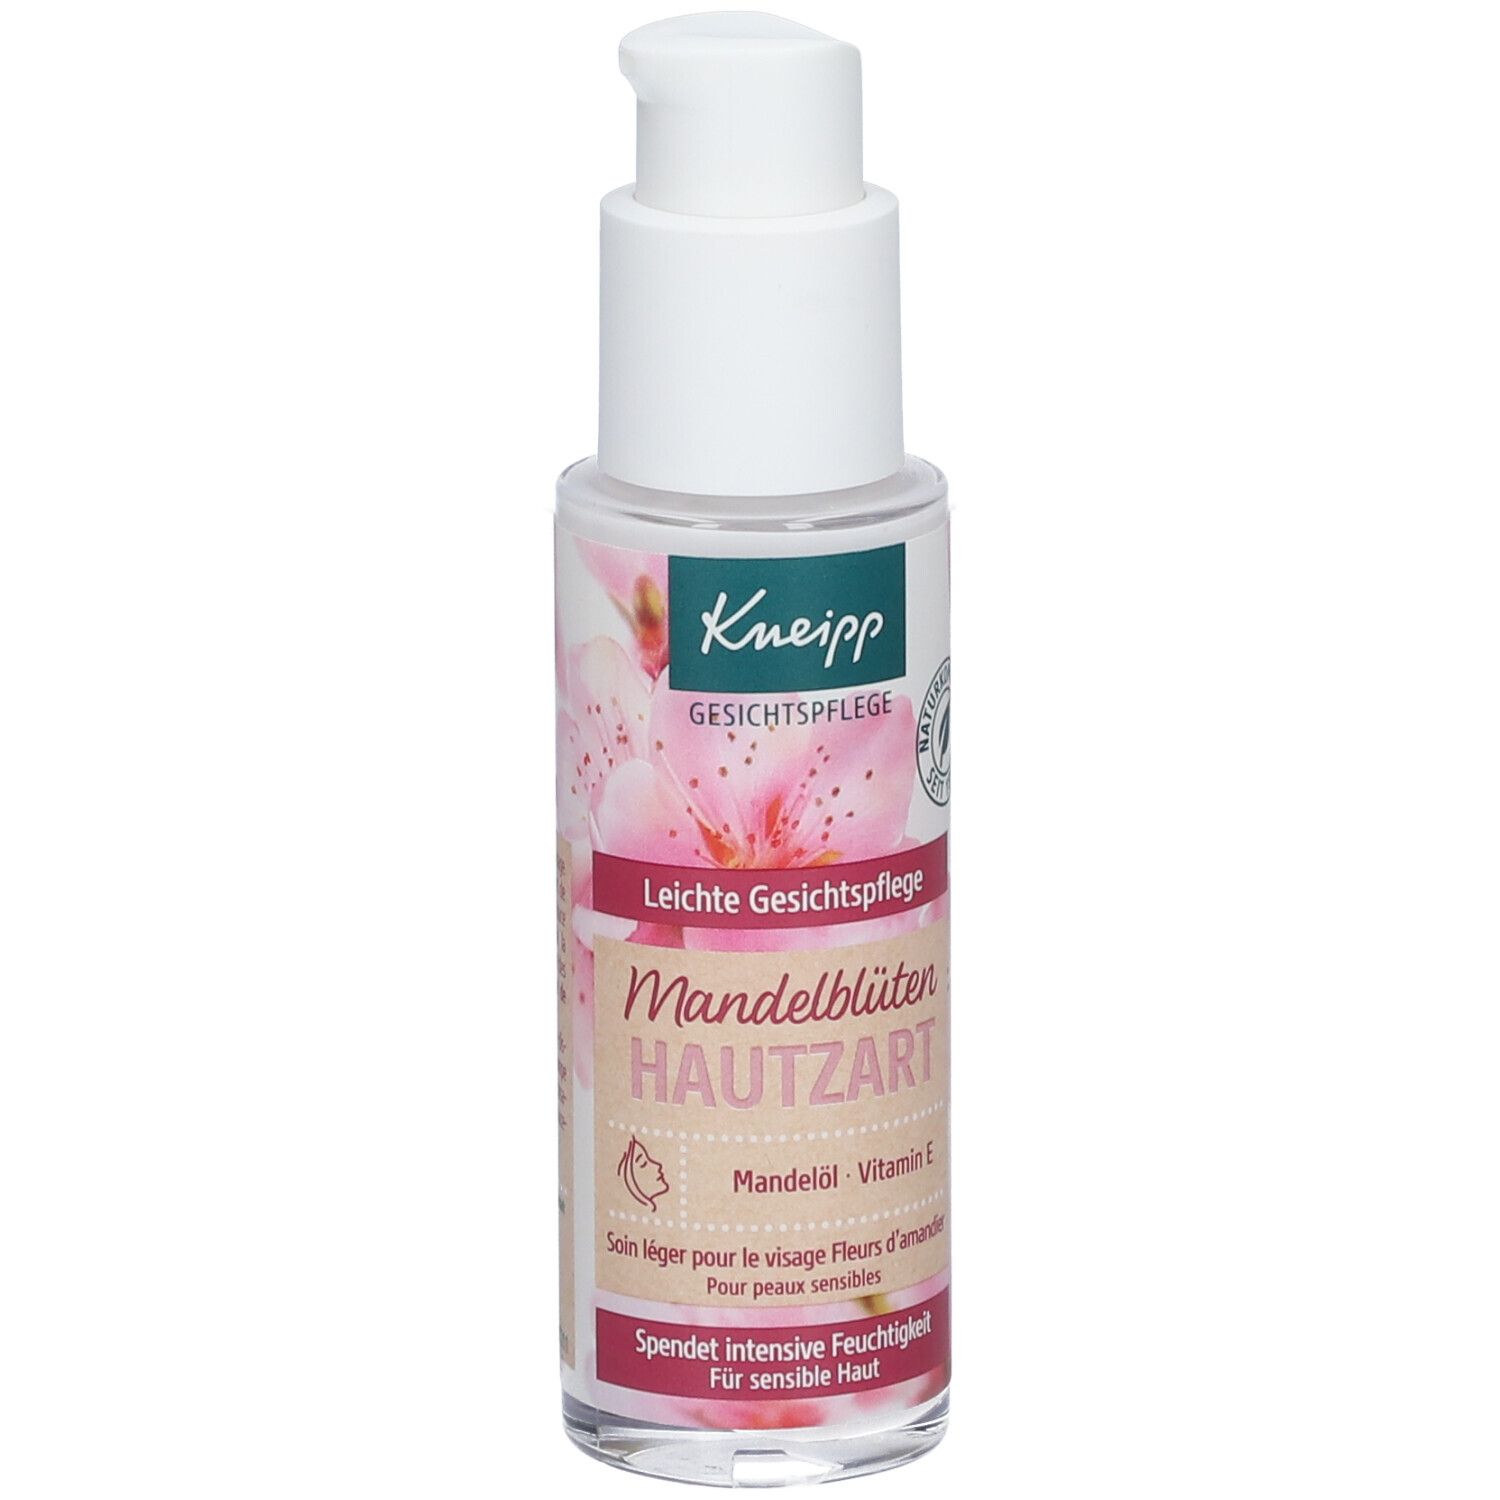 Kneipp® Leichte Gesichtspflege Mandelblüten Hautzart